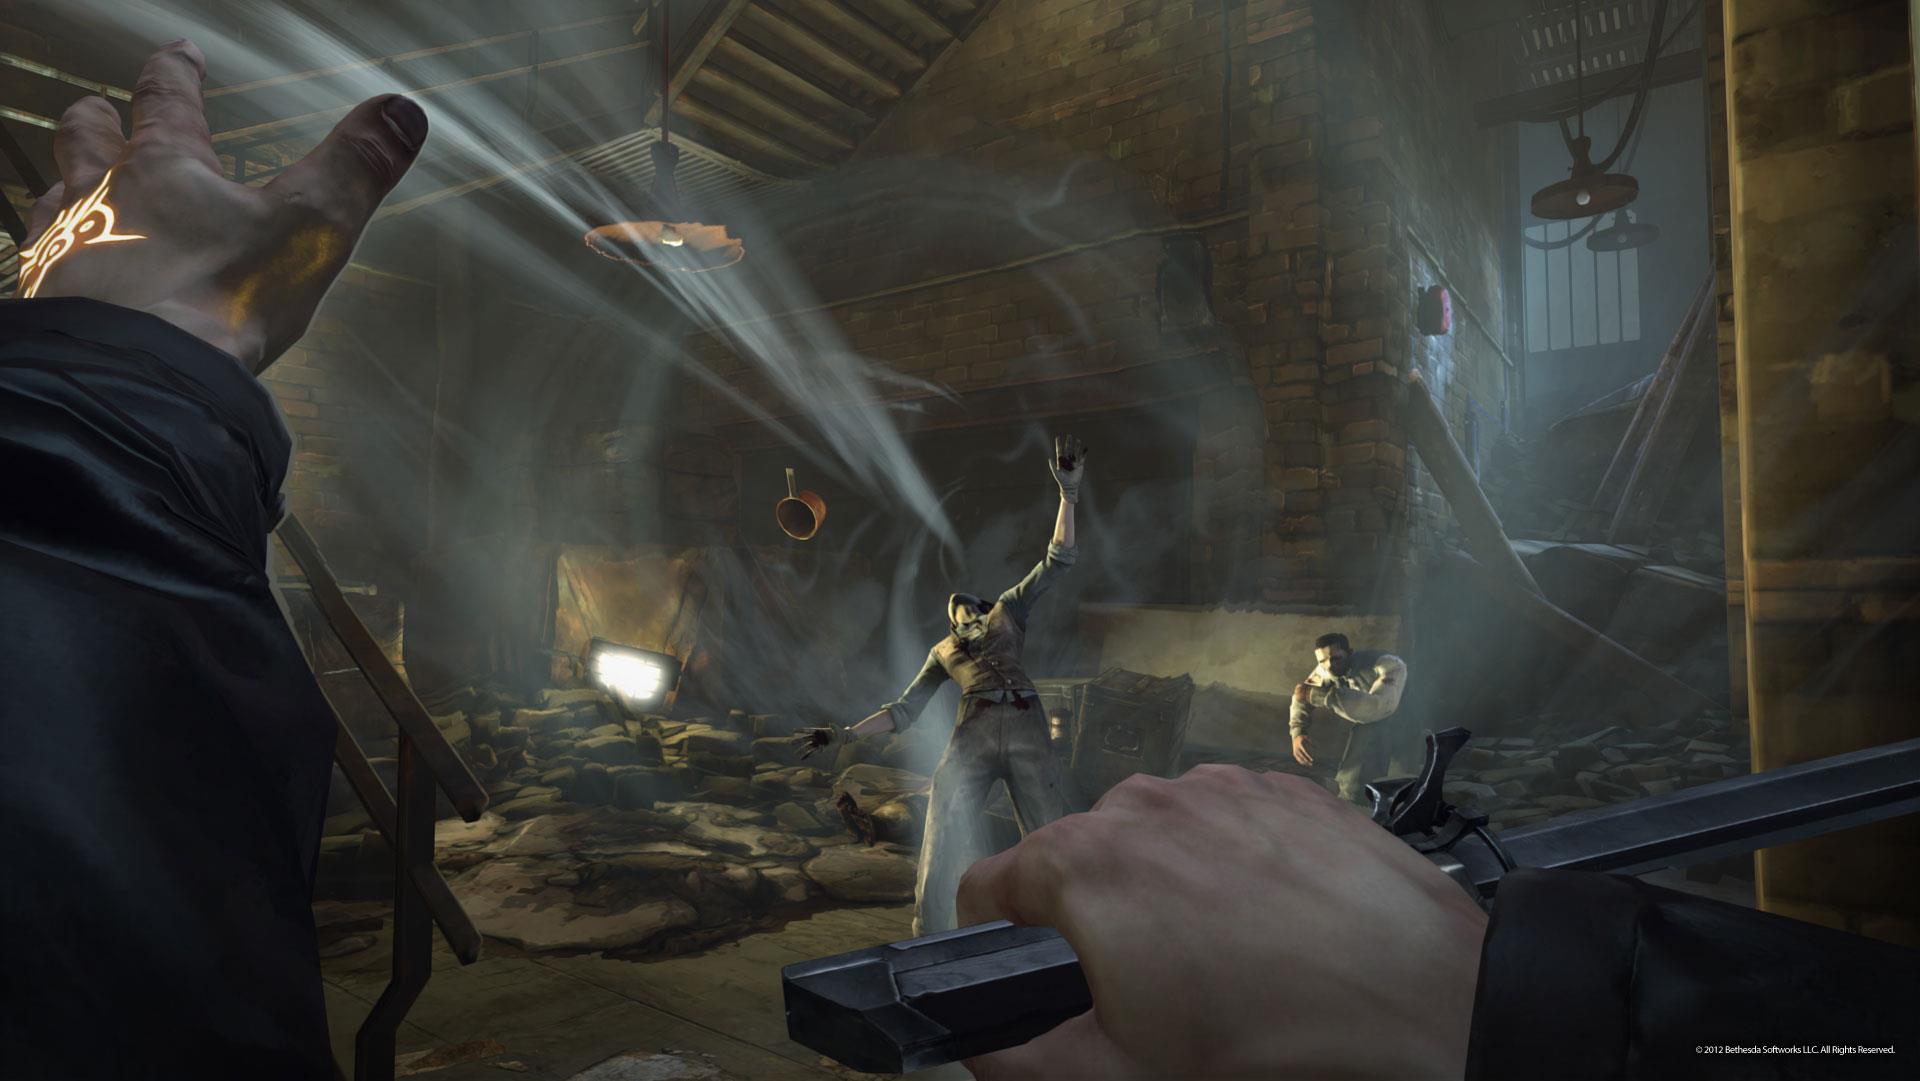 Immagine pubblicata in relazione al seguente contenuto: Arkane Studios mostra nuovi screenshot del game Dishonored | Nome immagine: news17137_2.jpg